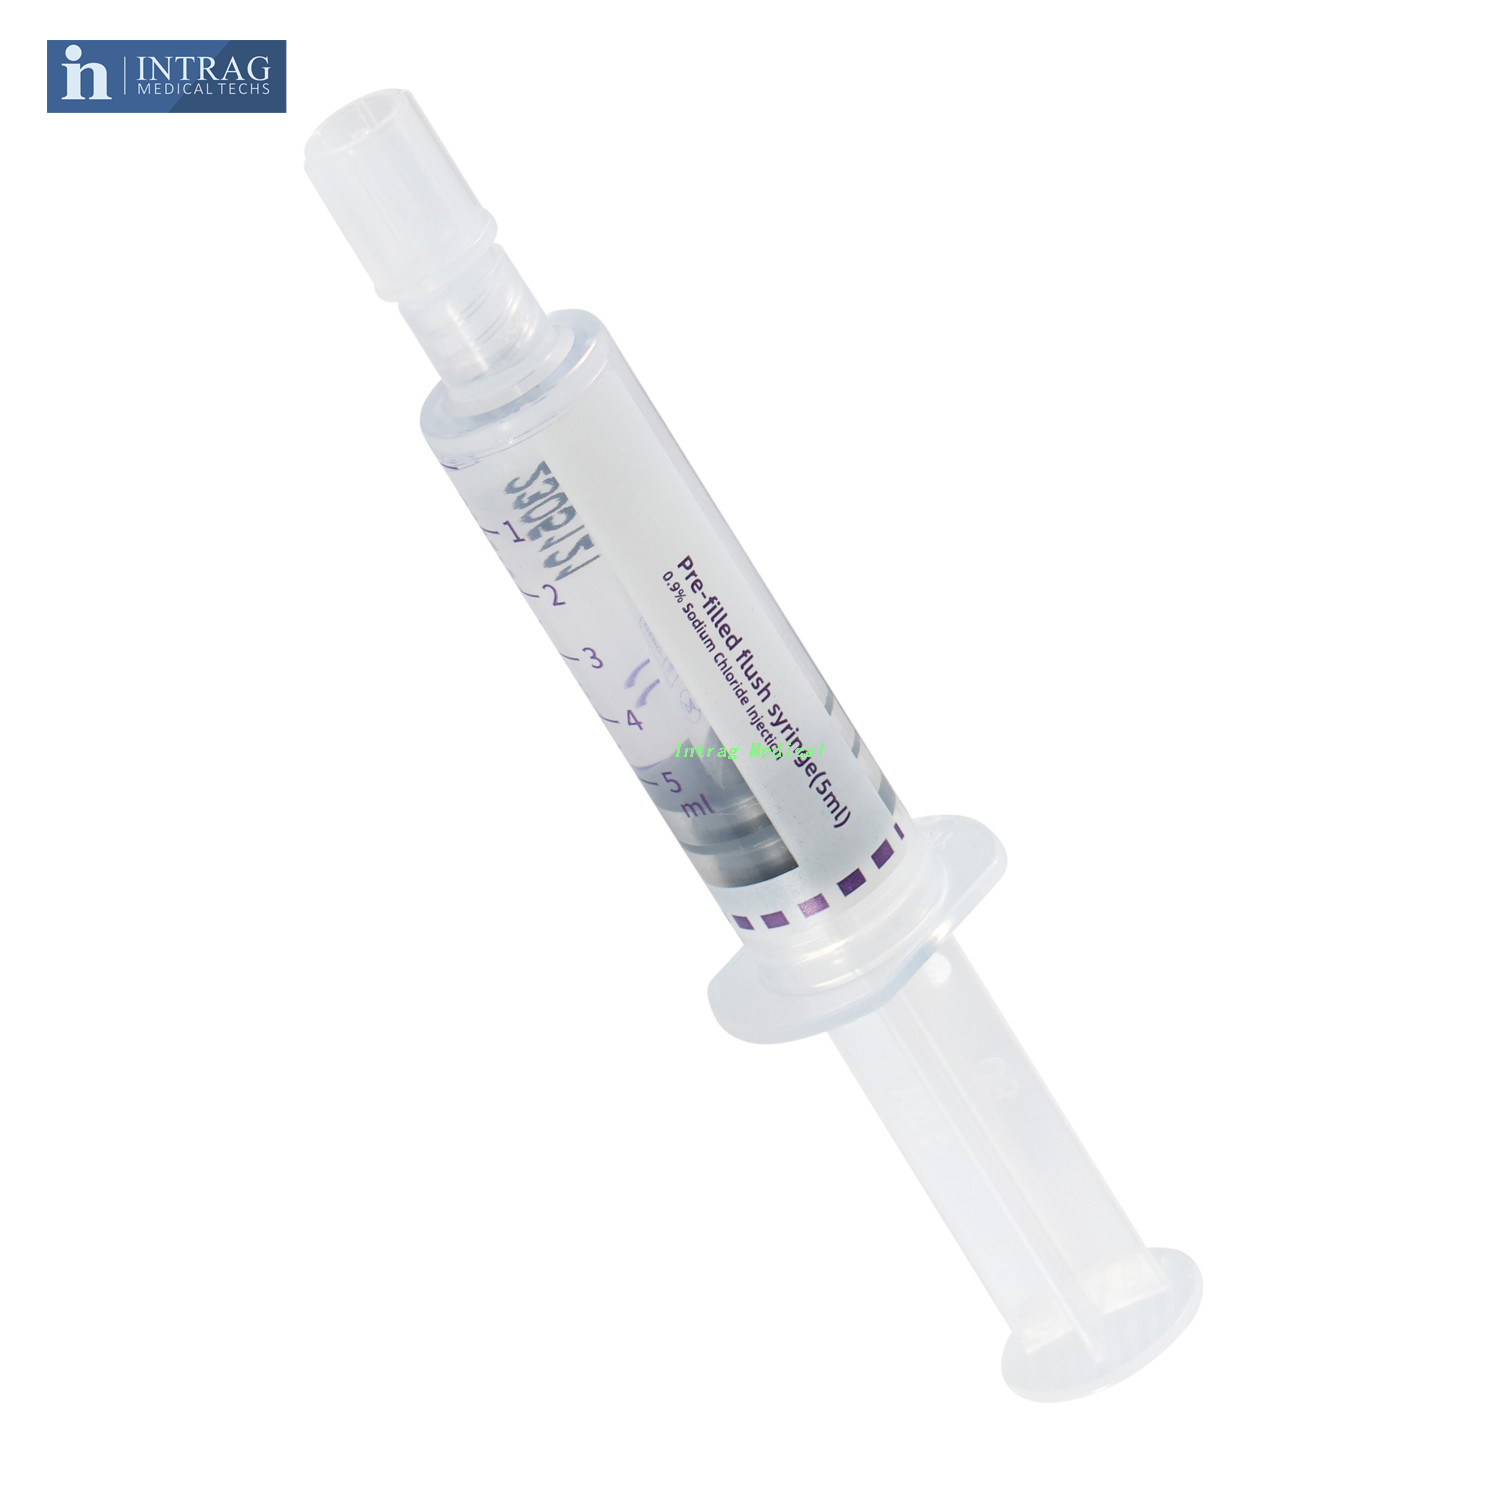 Pre-Filled Normal Saline Flush Syringe (3ml,5ml,10ml)